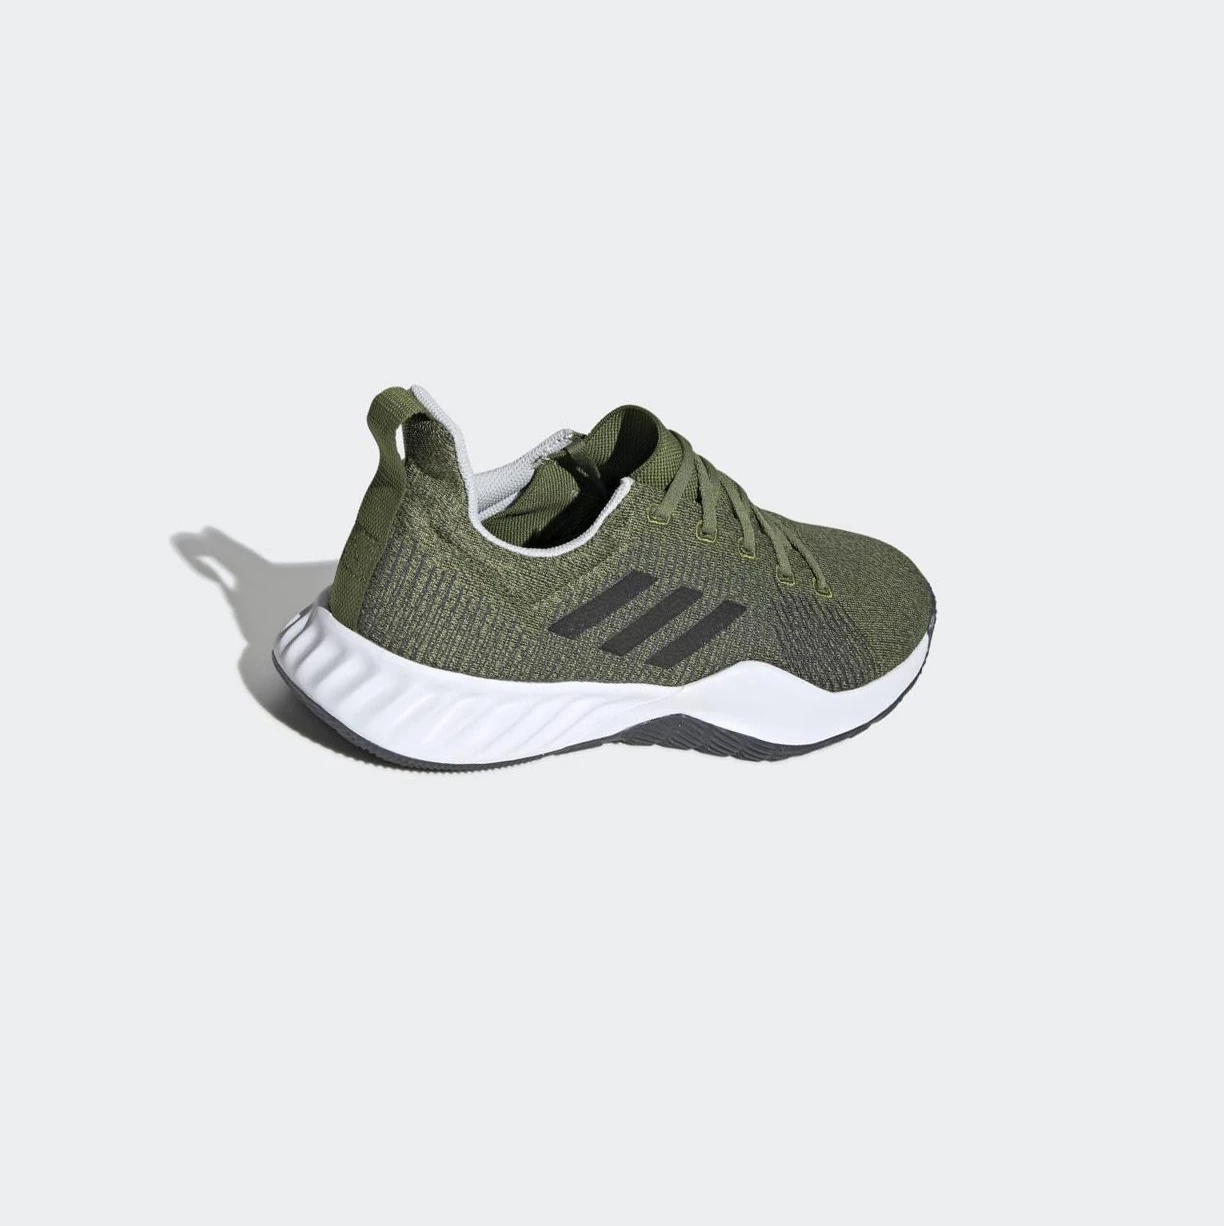 Botasky Adidas Solar LT Panske Zelene | 491SKNOVTJW